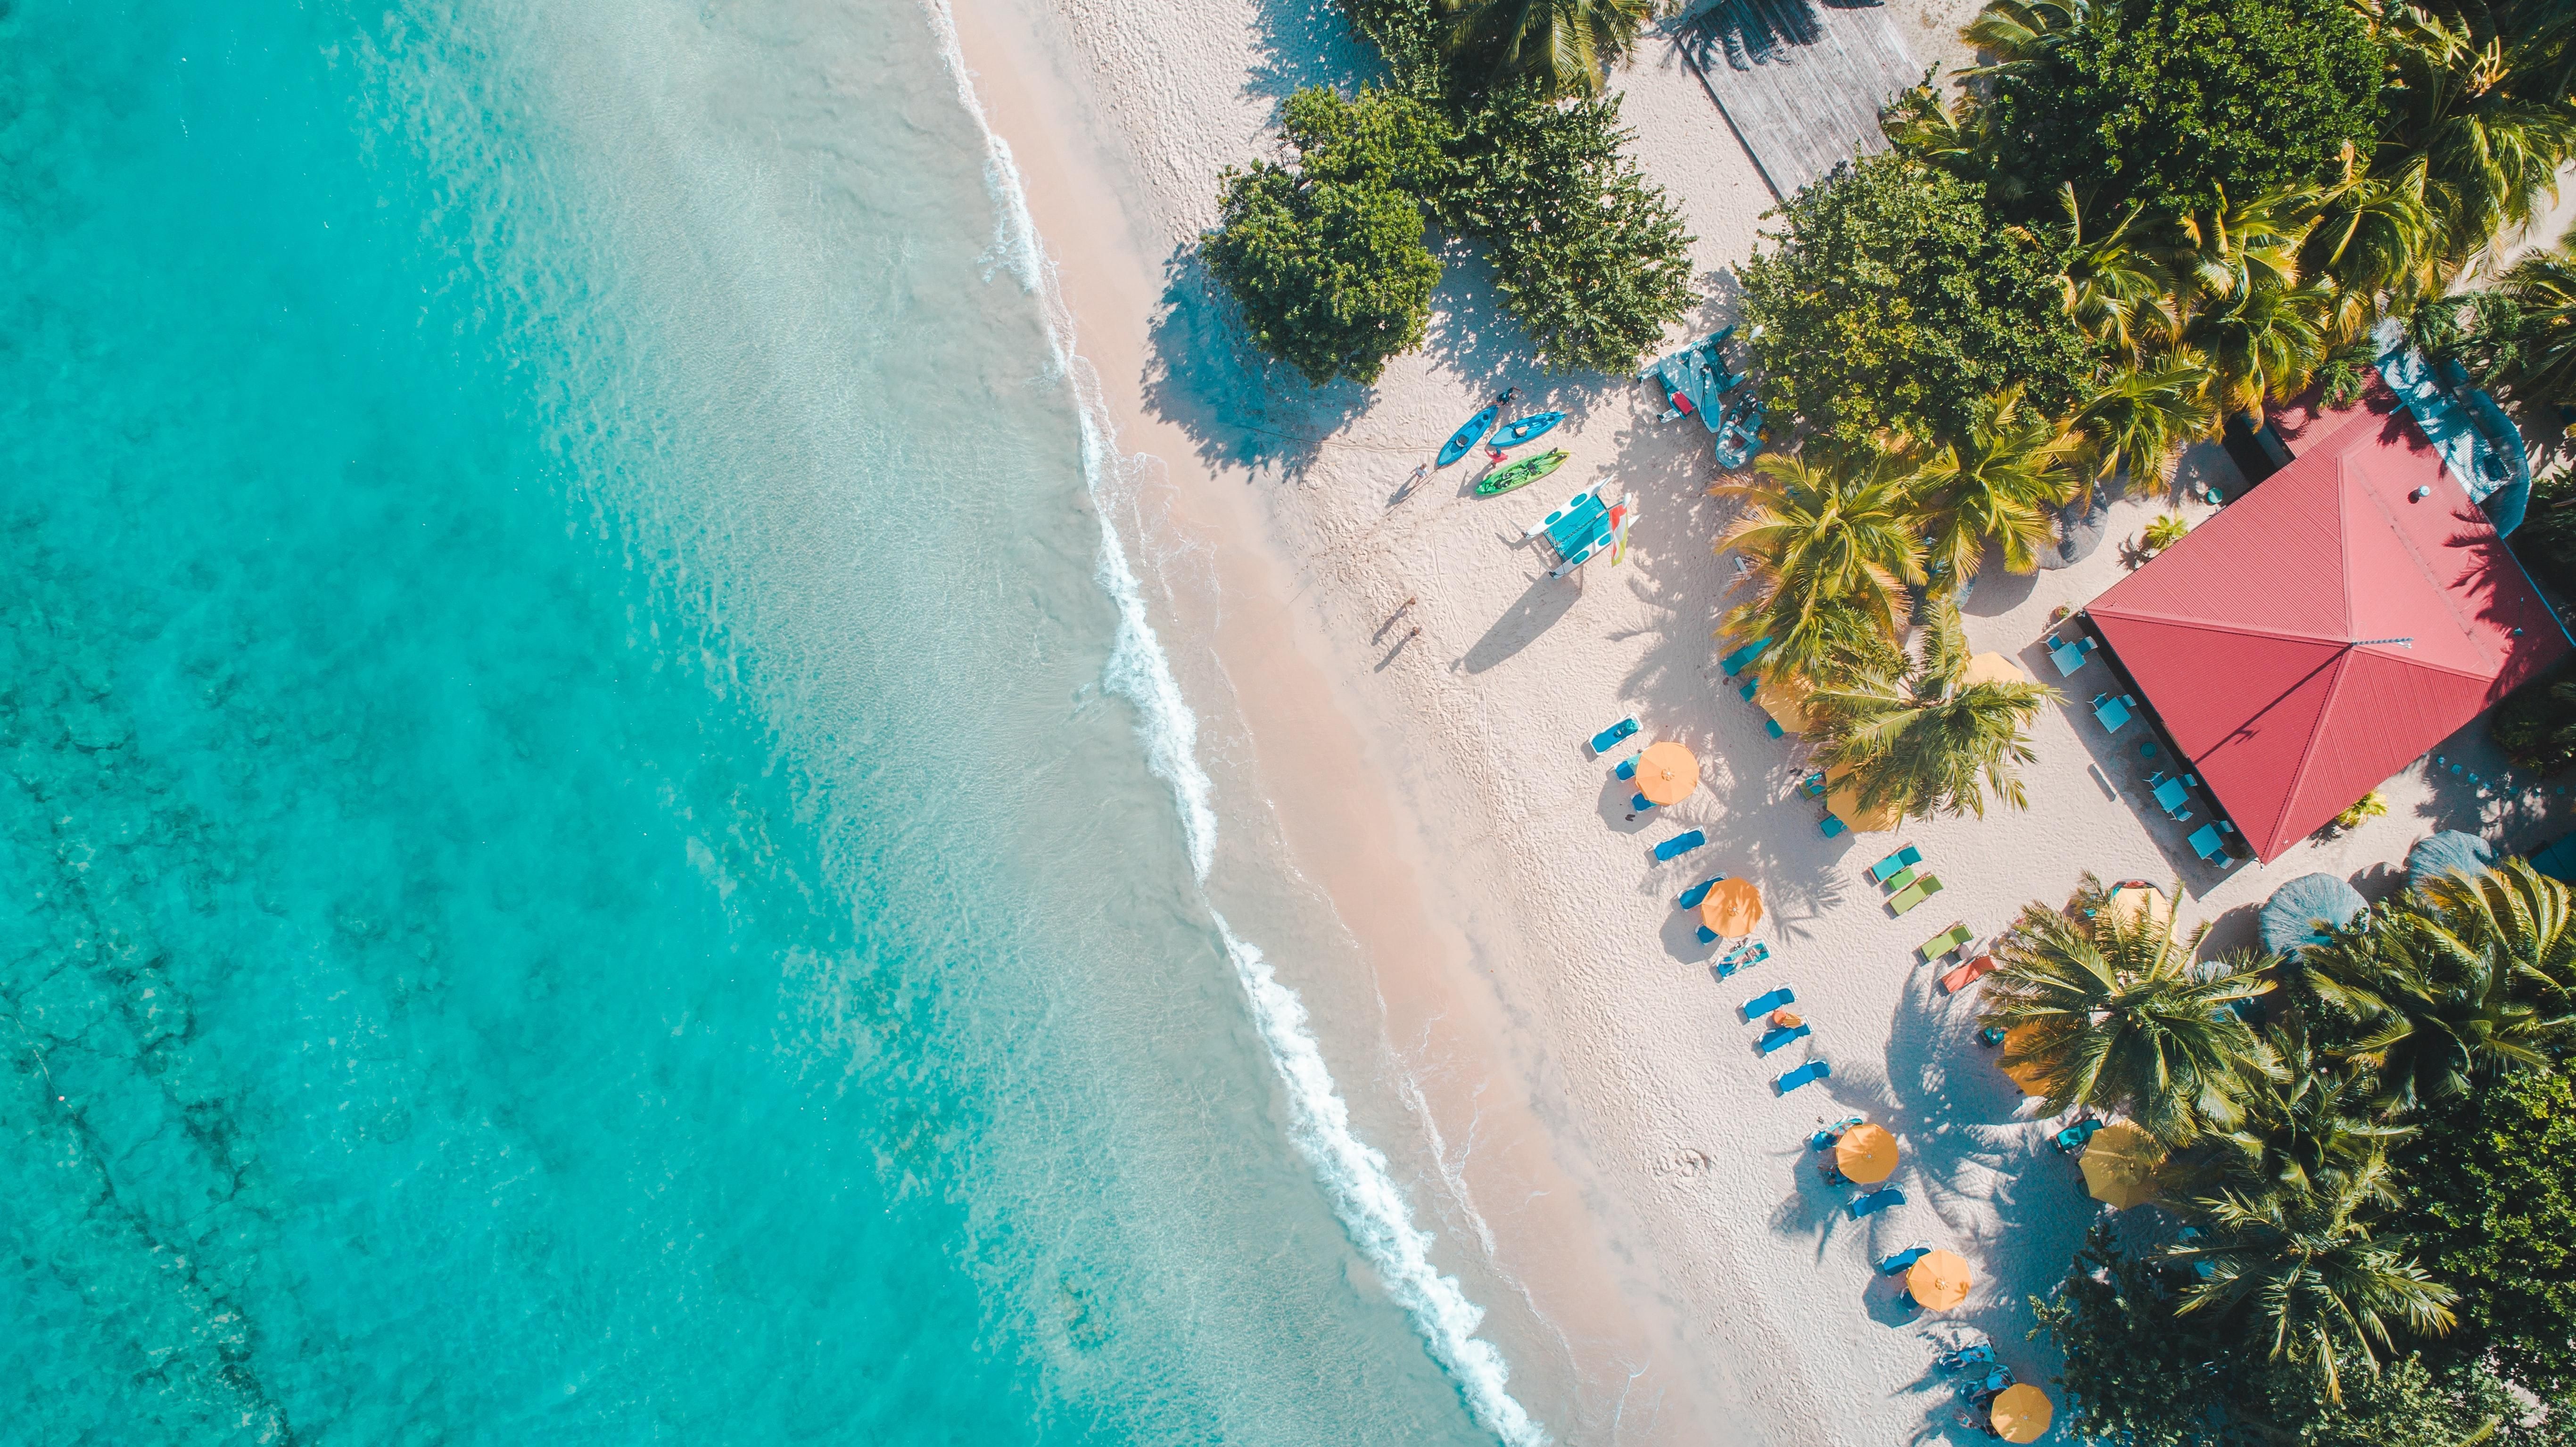 Канары, Барбадос или Мальдивы: 7 стран для летнего отдыха зимой - Отпуск